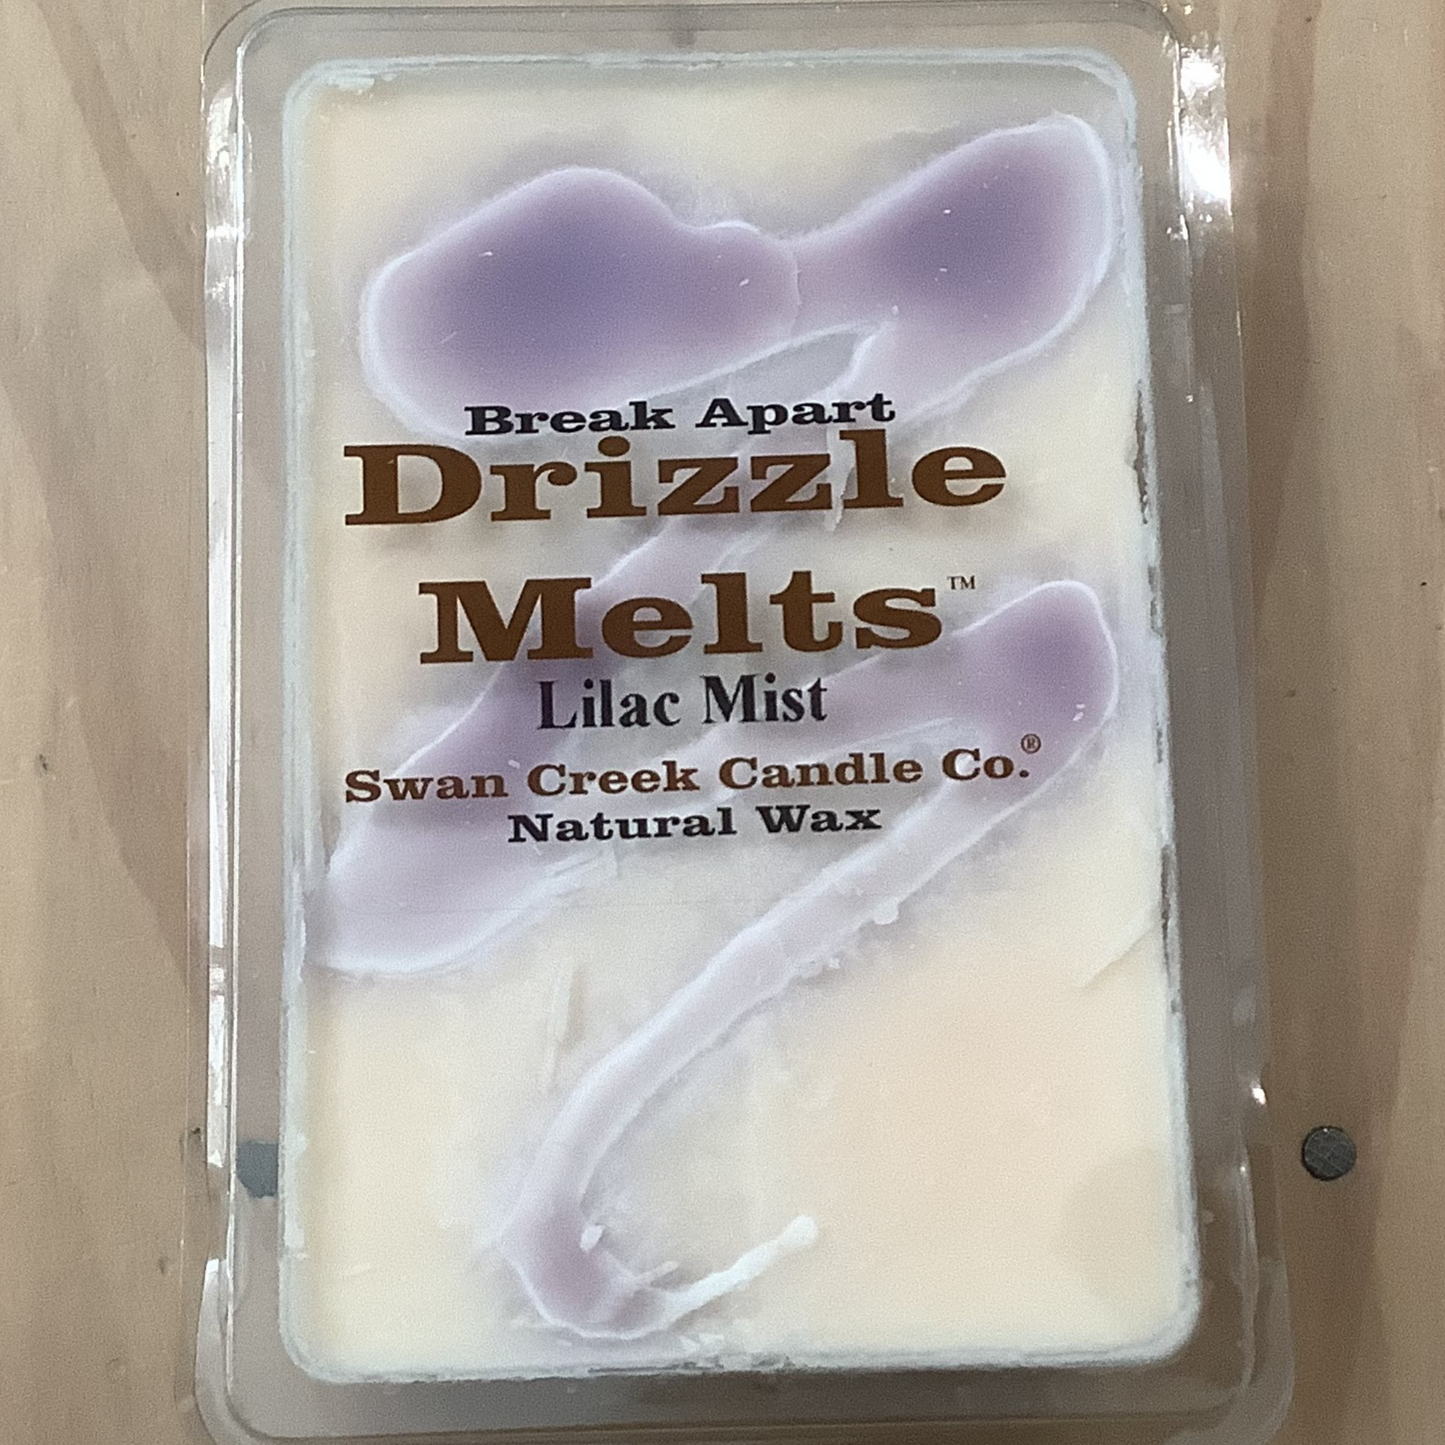 Lilac Mist Drizzle Melts